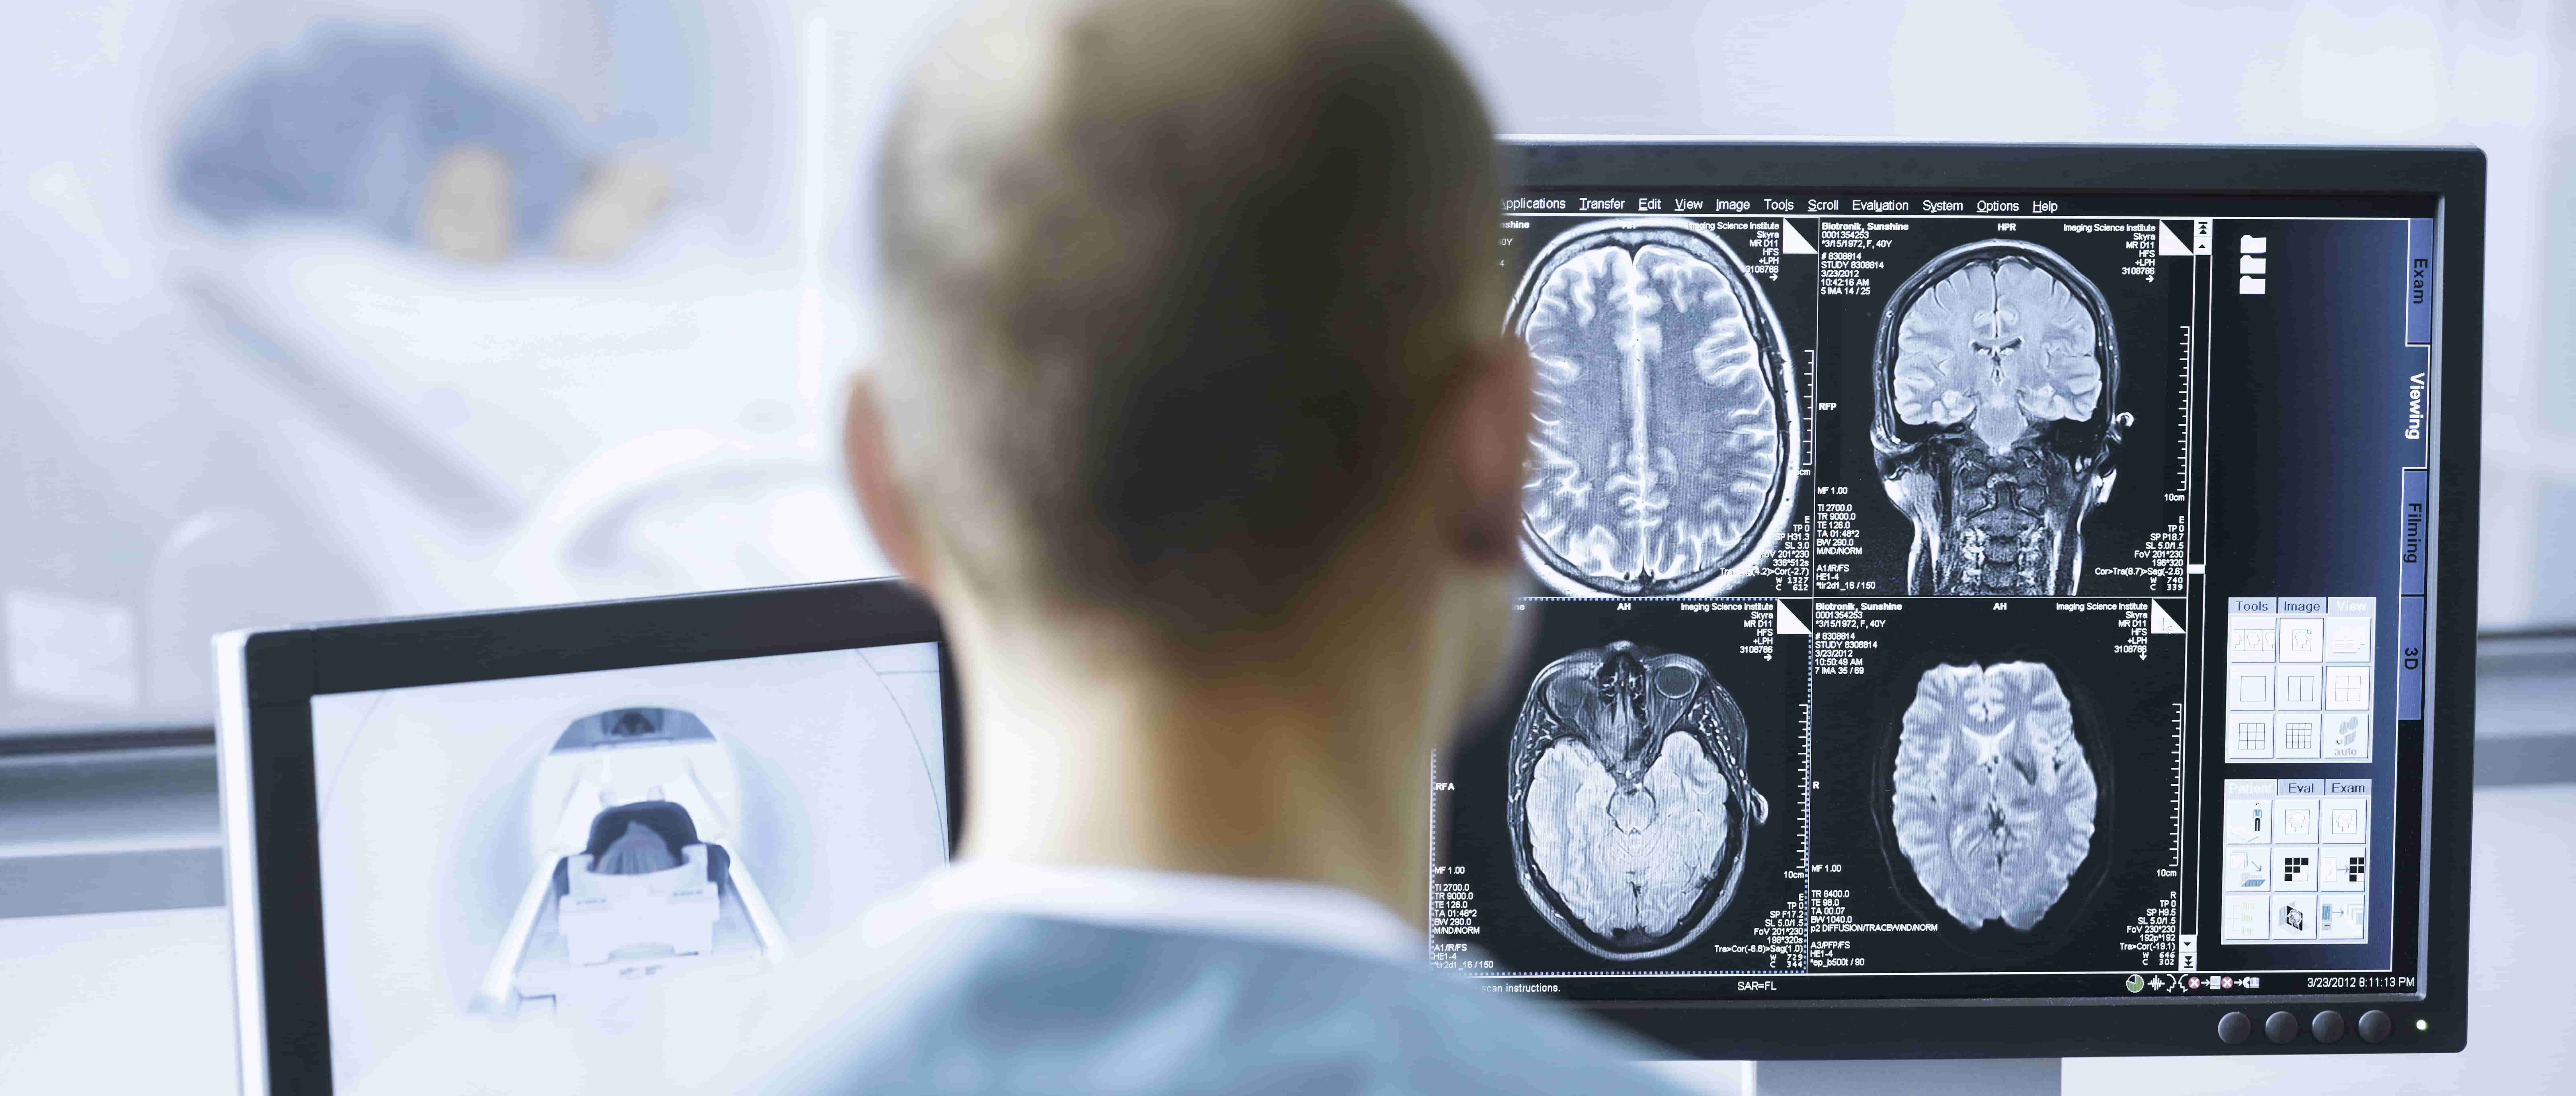 Foto de um médico de costas, sentado, de frente a uma tela de computador em primeiro plano que exibe um quadrante com imagens  de cérebros em diferentes ângulos